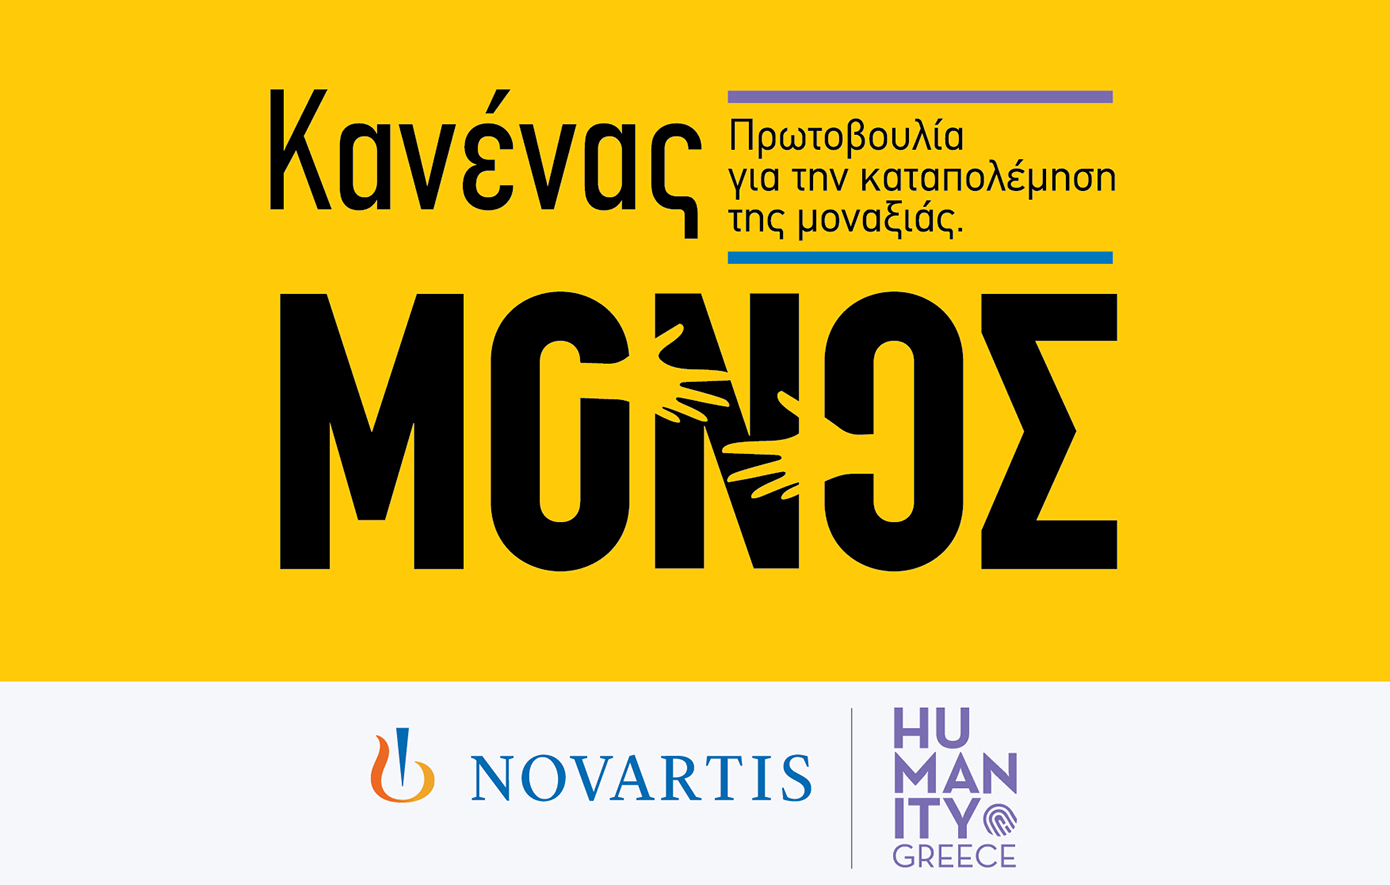 «Κανένας Μόνος»: Νέα πρωτοβουλία εταιρικής υπευθυνότητας της Novartis Hellas για την ενδυνάμωση ατόμων της Τρίτης Ηλικίας